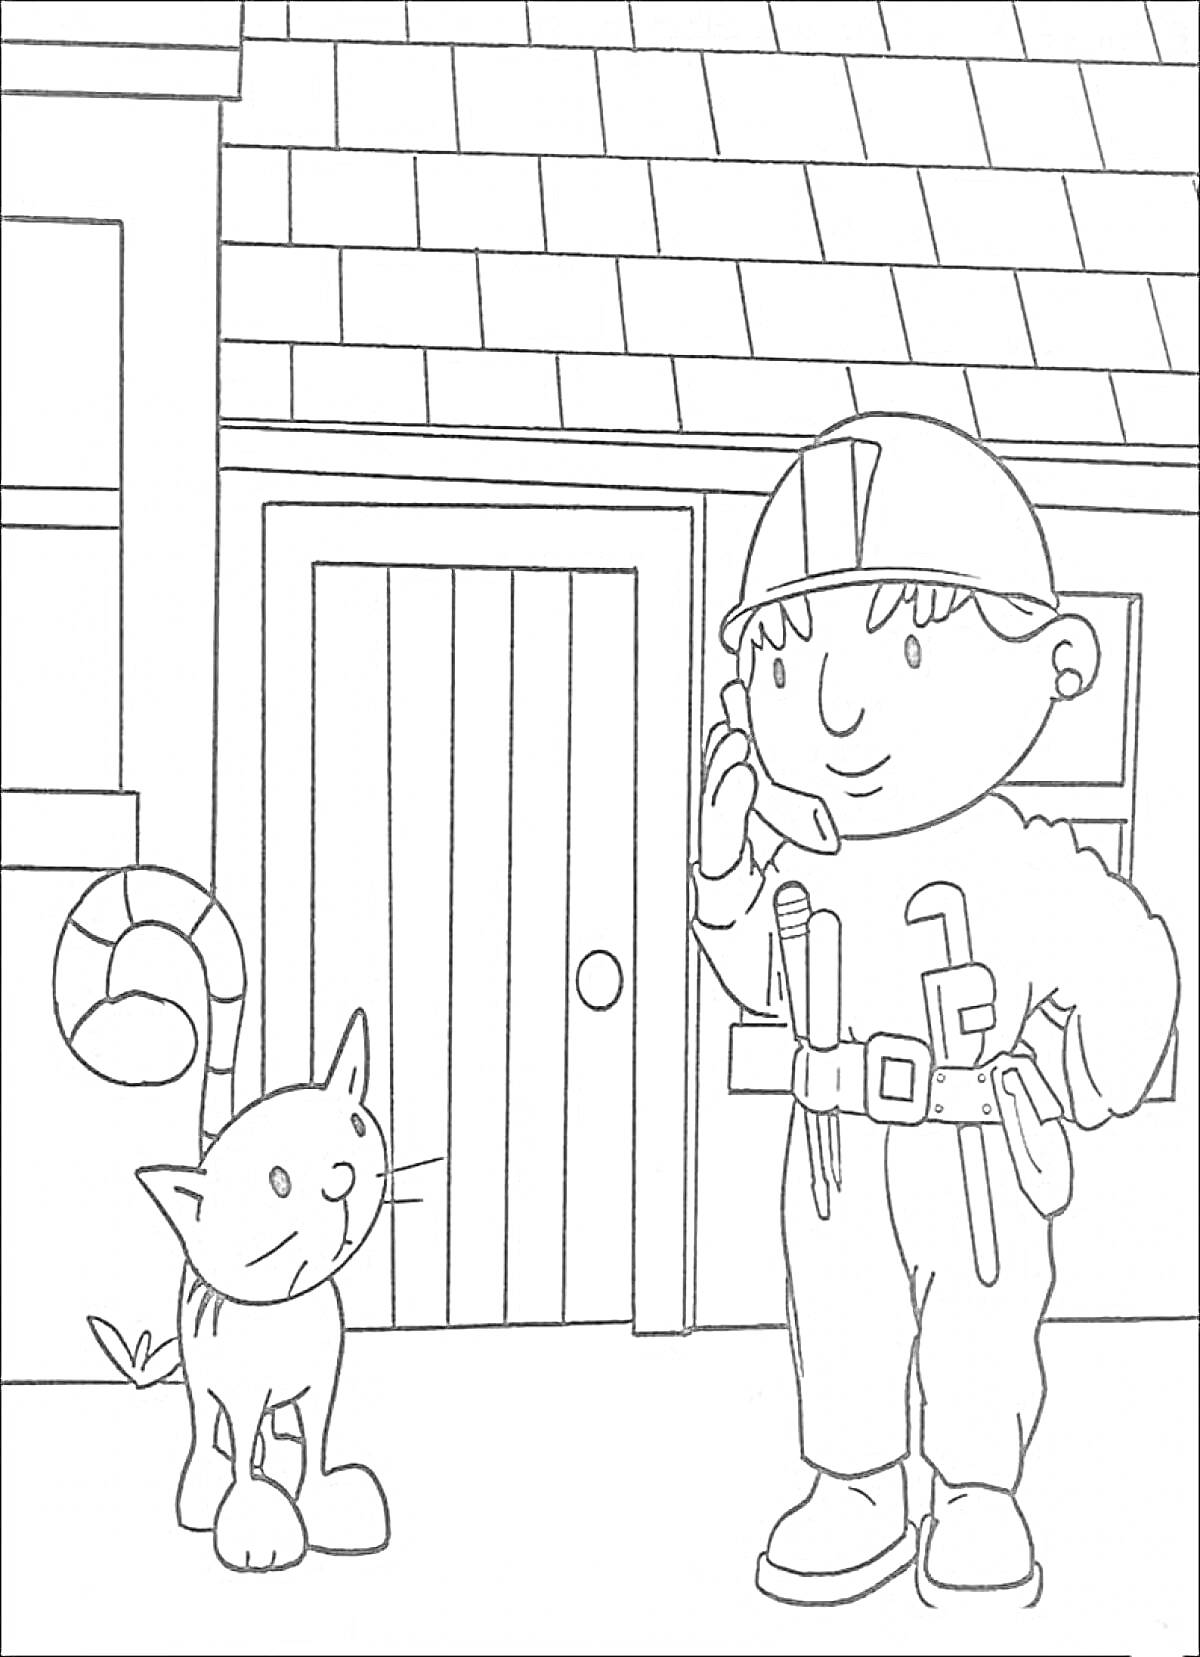 Раскраска Боб Строитель разговаривает по телефону рядом с домом и котом